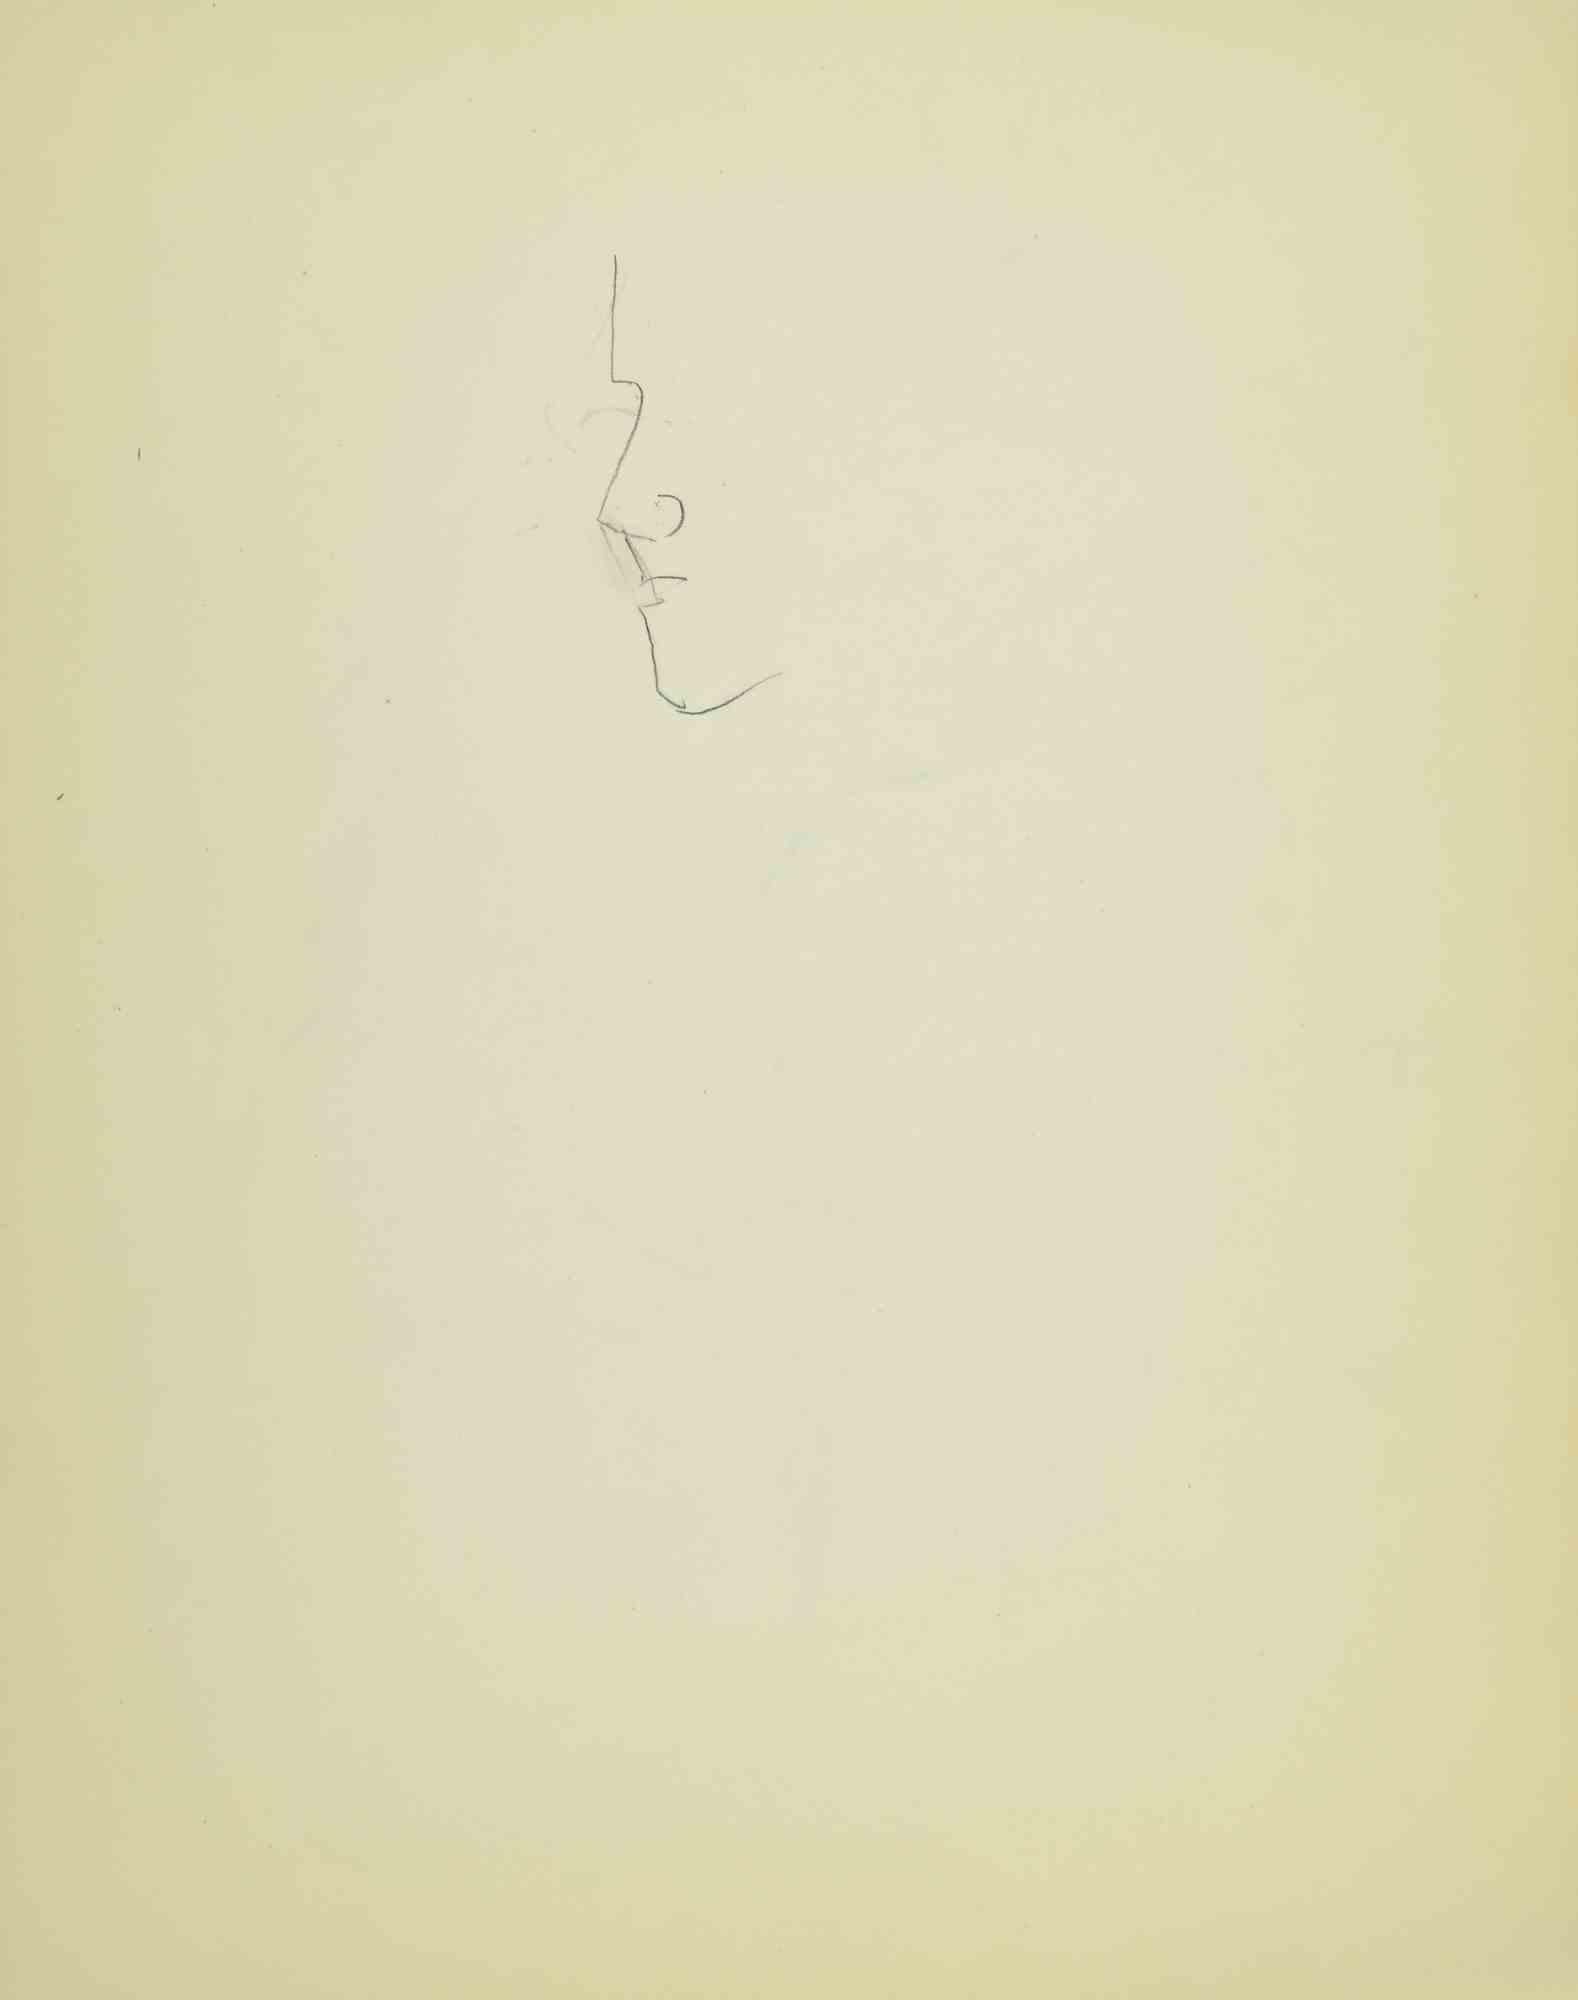 Sketch for a Portrait ist eine Zeichnung auf Papier, die Mitte des 20. Jahrhunderts von Flor David angefertigt wurde.

Bleistift auf cremefarbenem Papier.

Gute Bedingungen.

Flor David (1891-1958) ):  Pseudonym von David Florence. Pastellmaler. Er